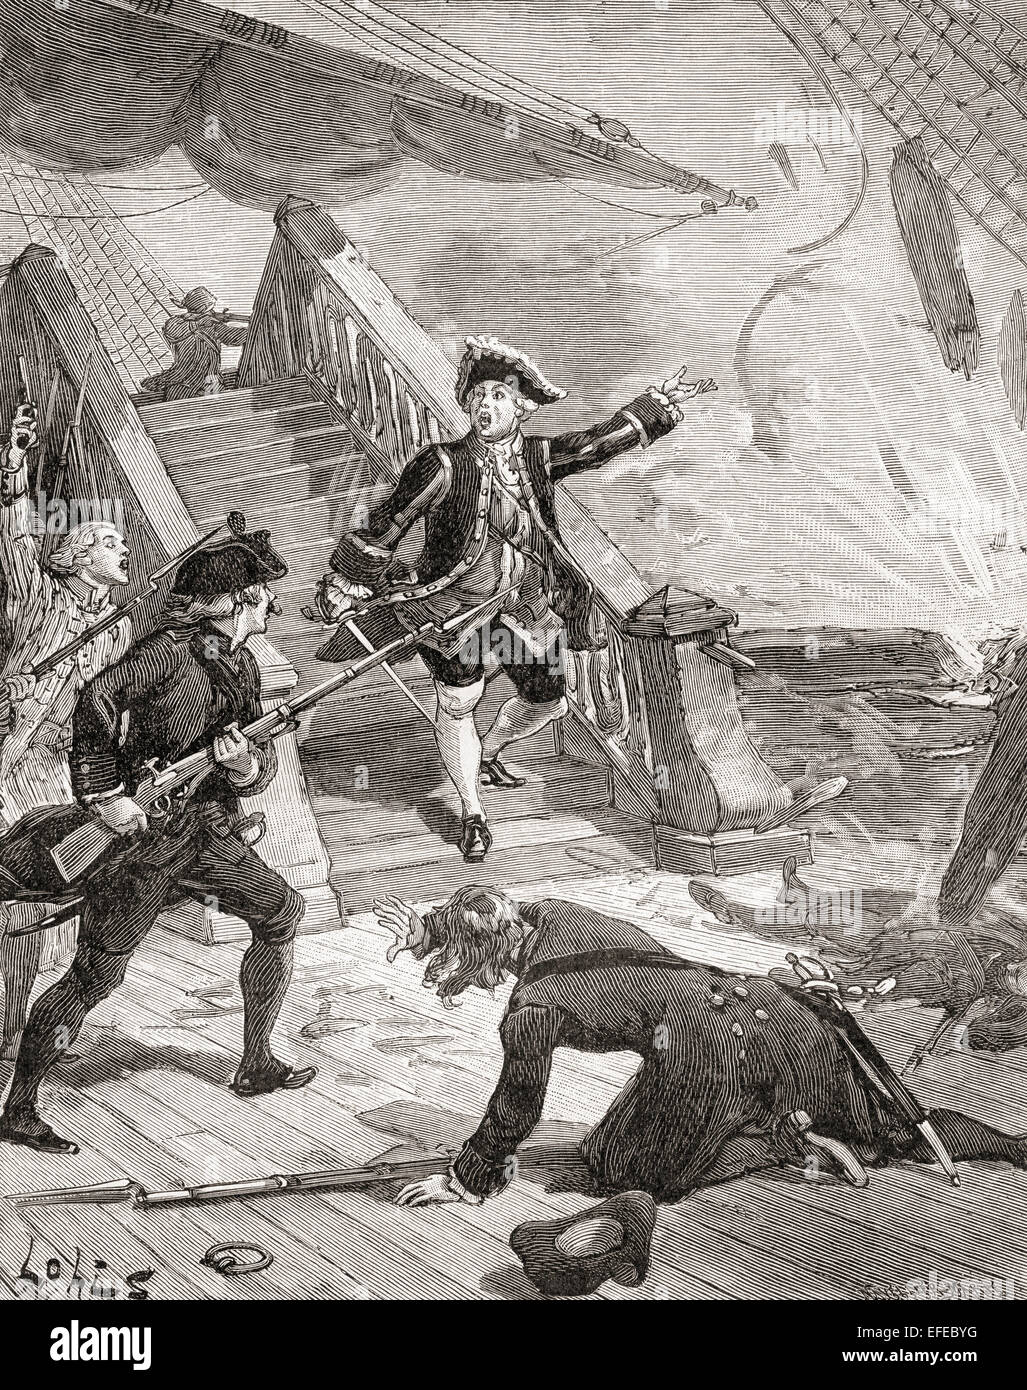 Admiral Suffren nell'Oceano Indiano durante la sua campagna contro l'inglese nel XVIII secolo. Admiral comte Pierre André de Suffren de Saint Tropez, Bailli de Suffren, 1729 - 1788. Ammiraglio francese. Foto Stock